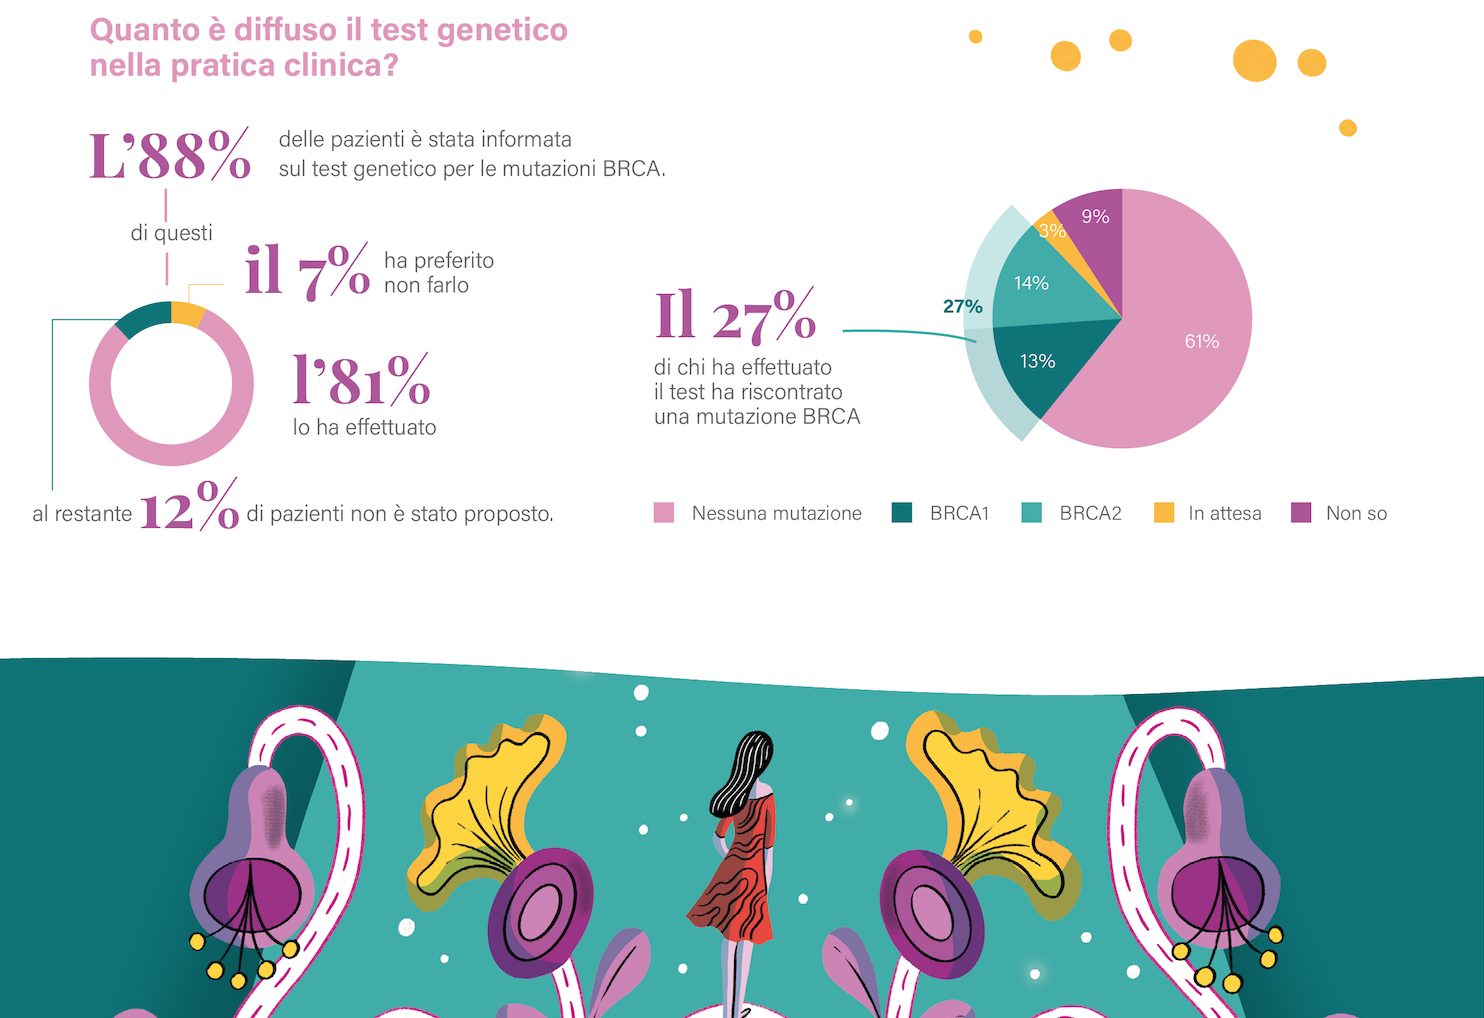 Quanto è diffuso il test genetico BRCA nella pratica clinica?